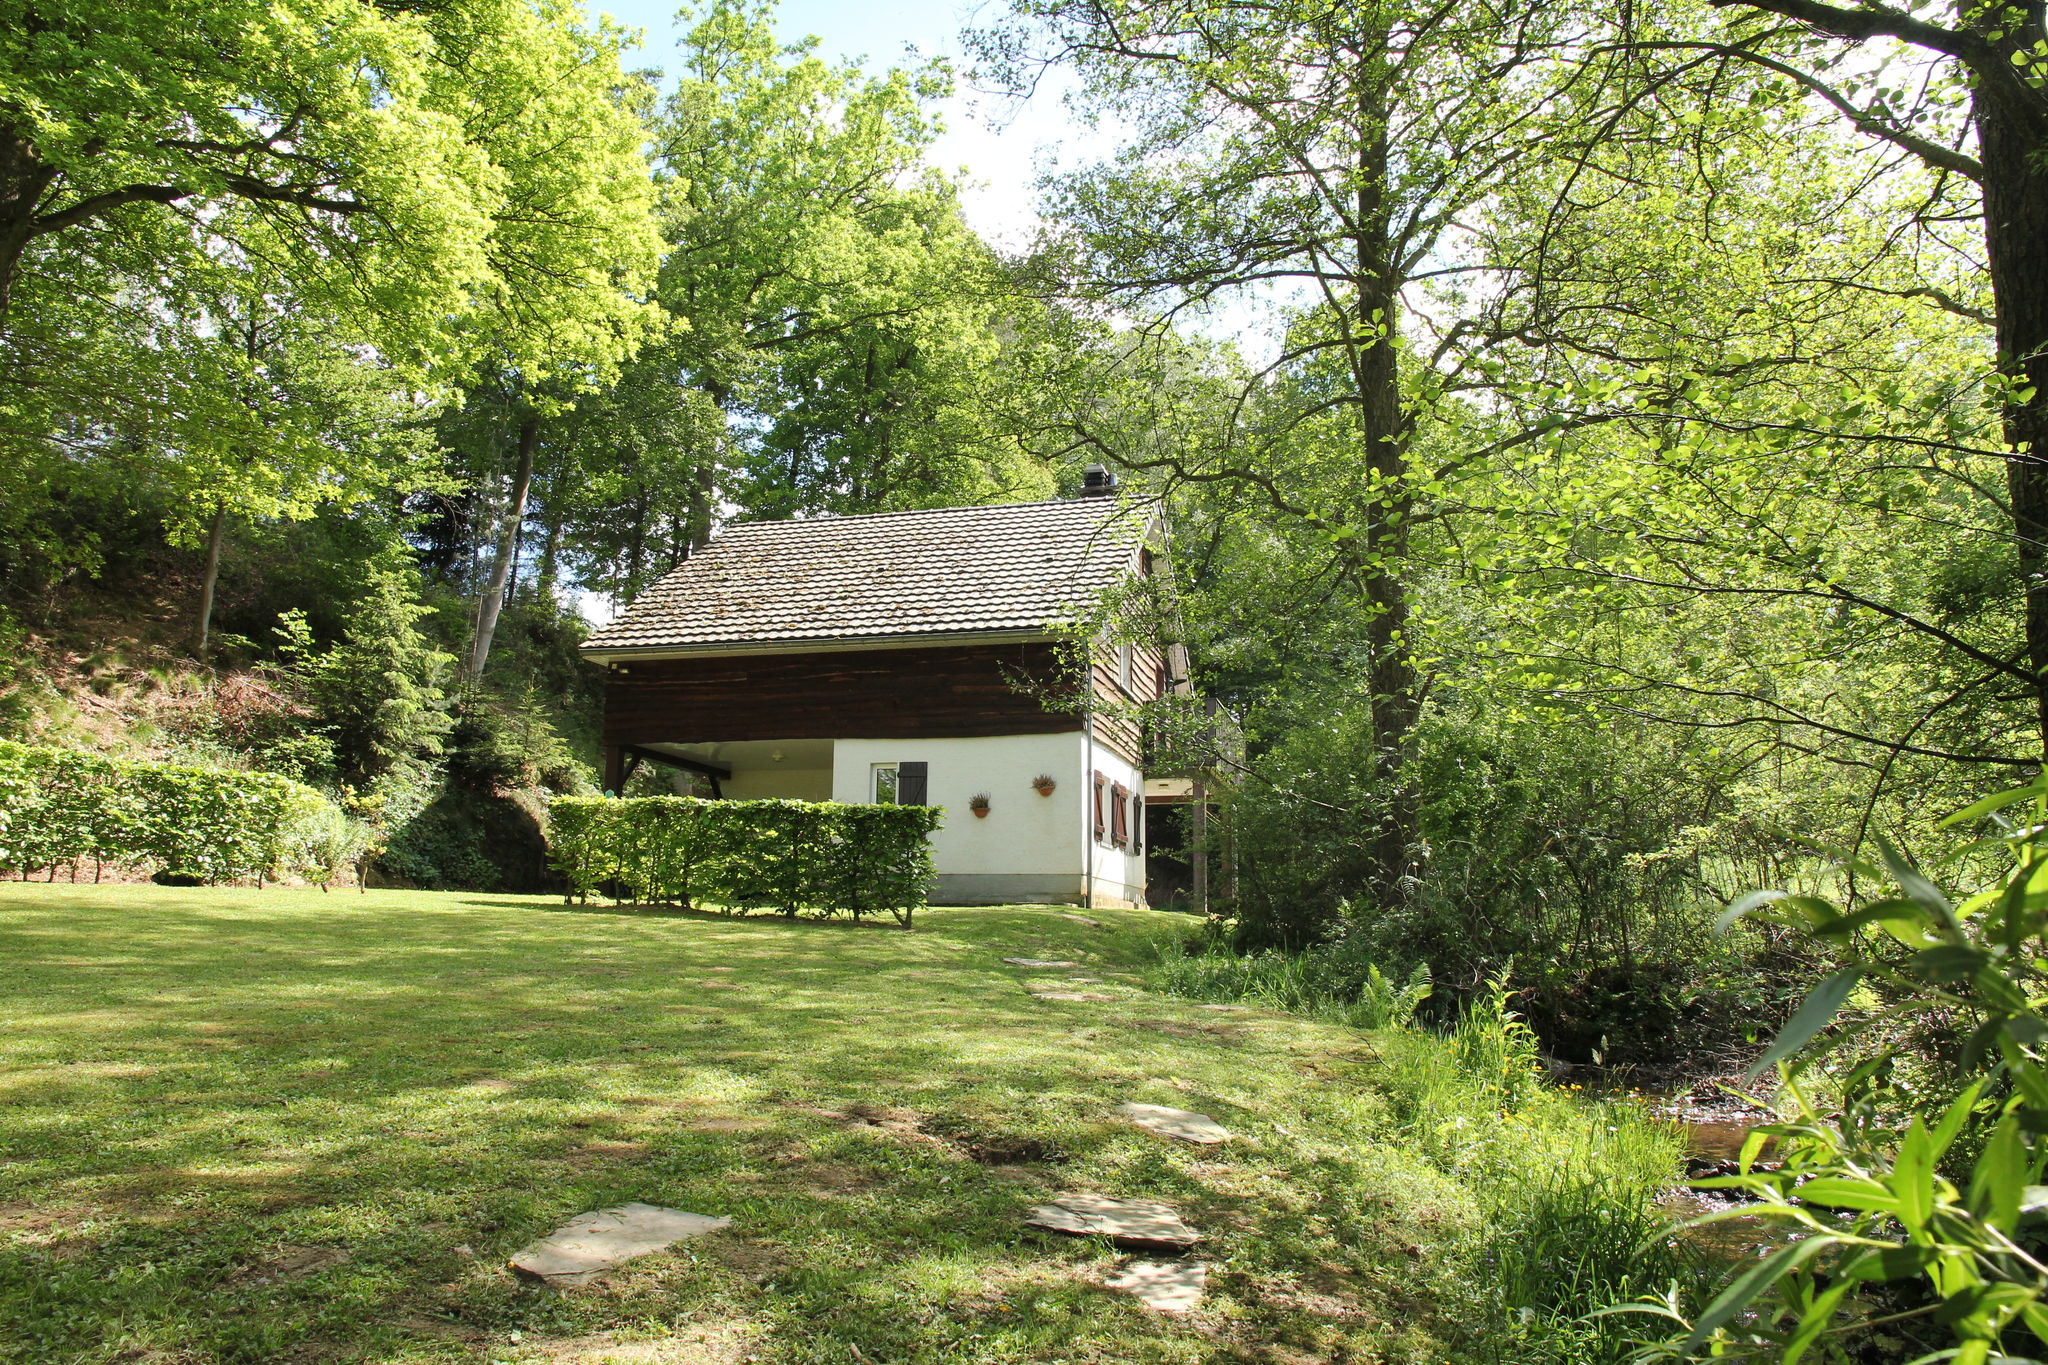 Vrijstaand, knus vakantiehuisje met sauna in een bosrijke omgeving